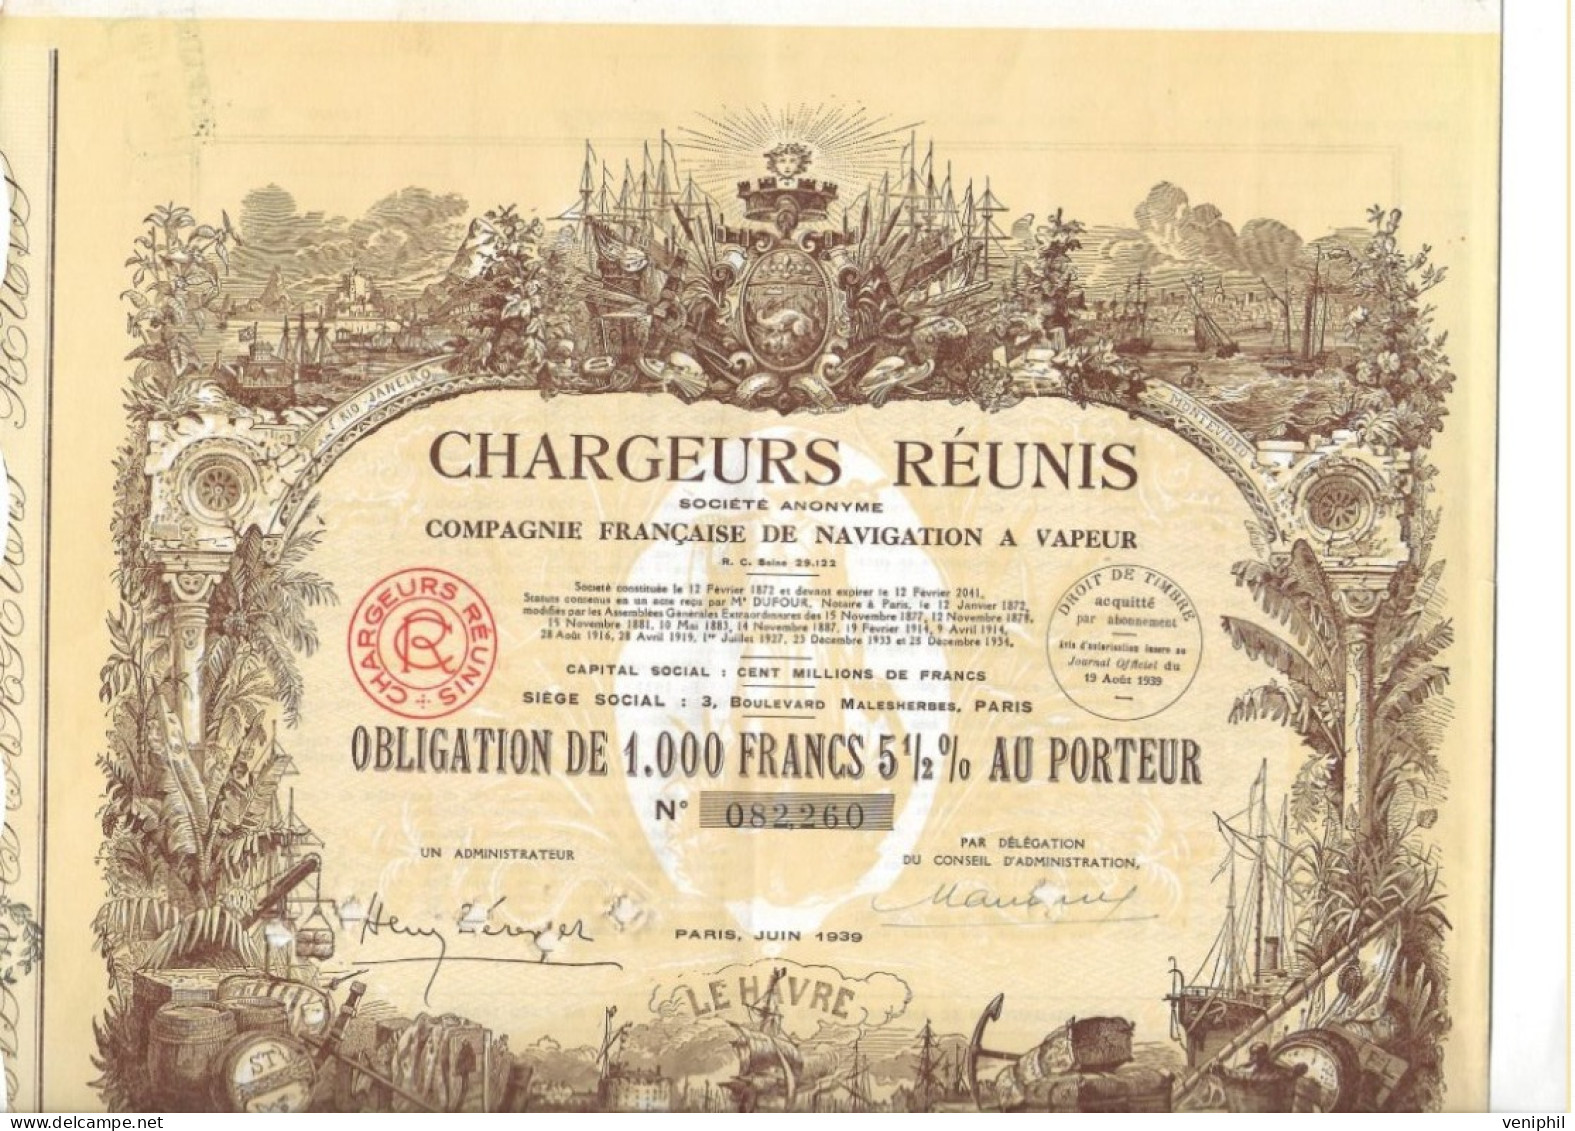 CHARGEURS REUNIS - COMPAGNIE FRANCAISE DE NAVIGATION A VAPEUR -OBLIGATION DE 1000 FRS- ANNEE 1939 - Scheepsverkeer